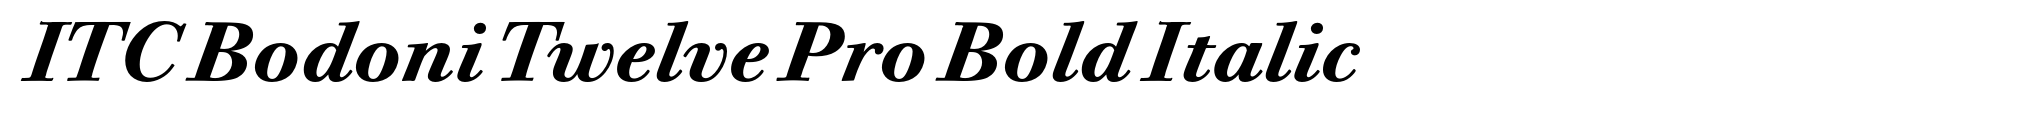 ITC Bodoni Twelve Pro Bold Italic image